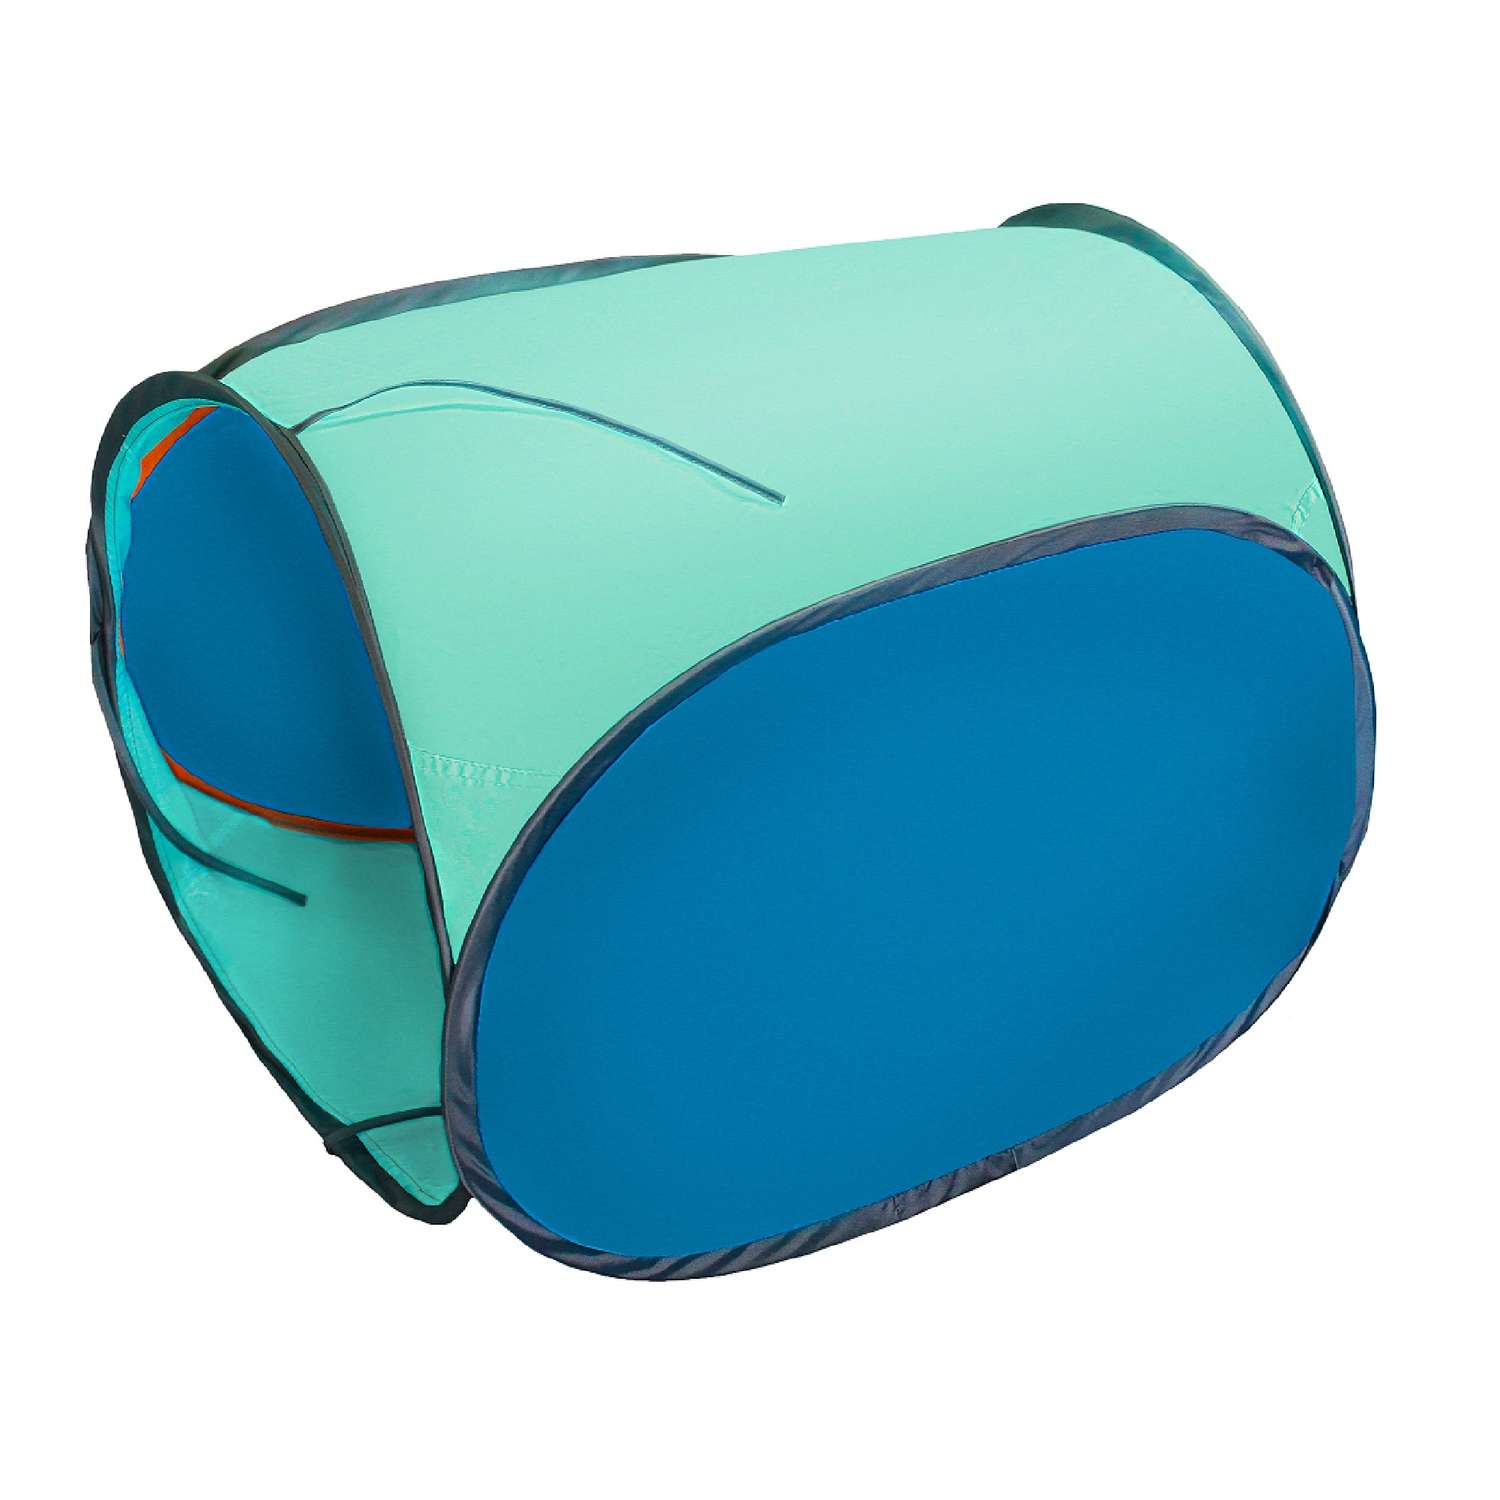 Тоннель для палатки Belon familia односекционный цвет голубой бирюзовый - фото 1